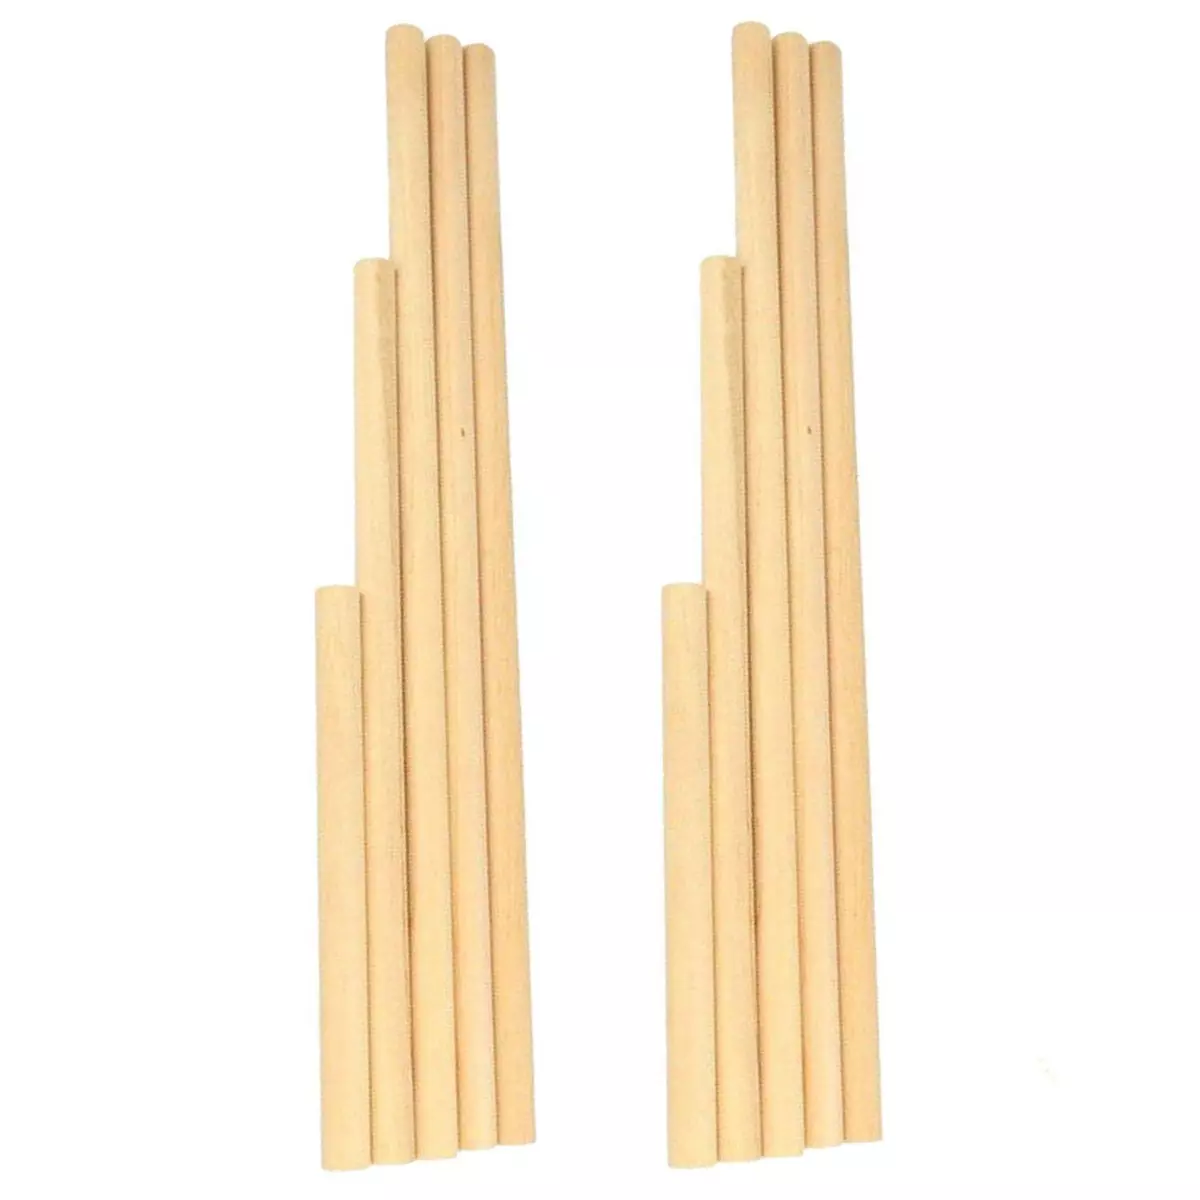 Artemio 10 bâtons en bois pour Macramé